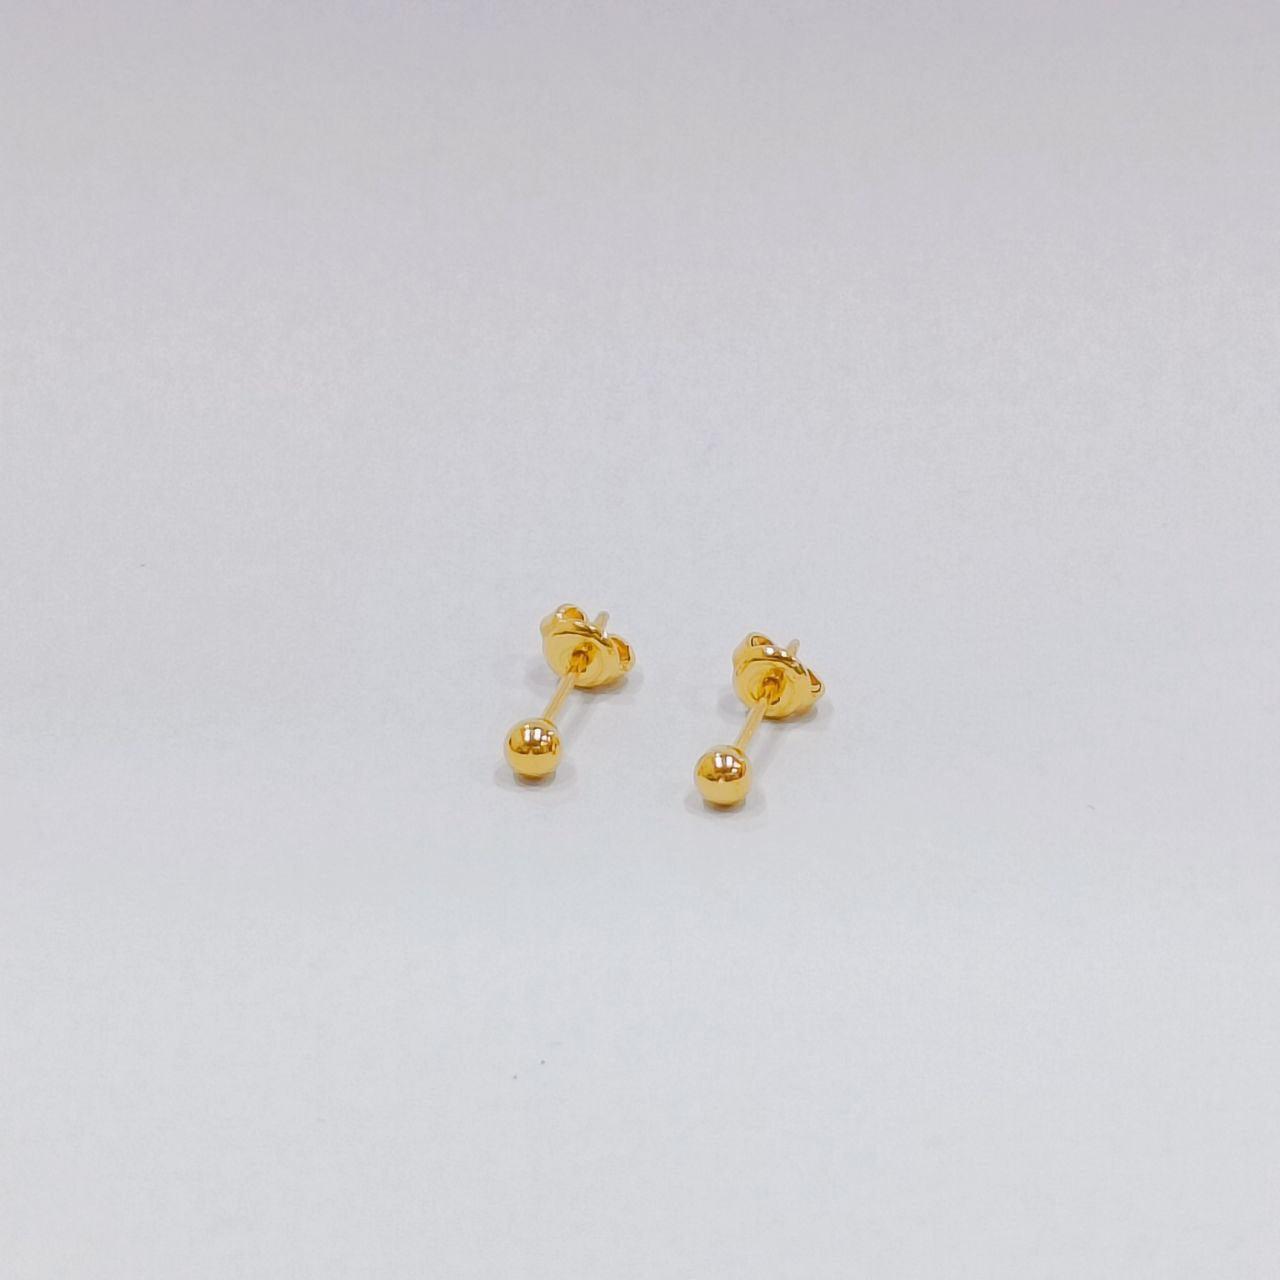 22k / 916 Gold Ball Stud Earring-Earrings-Best Gold Shop